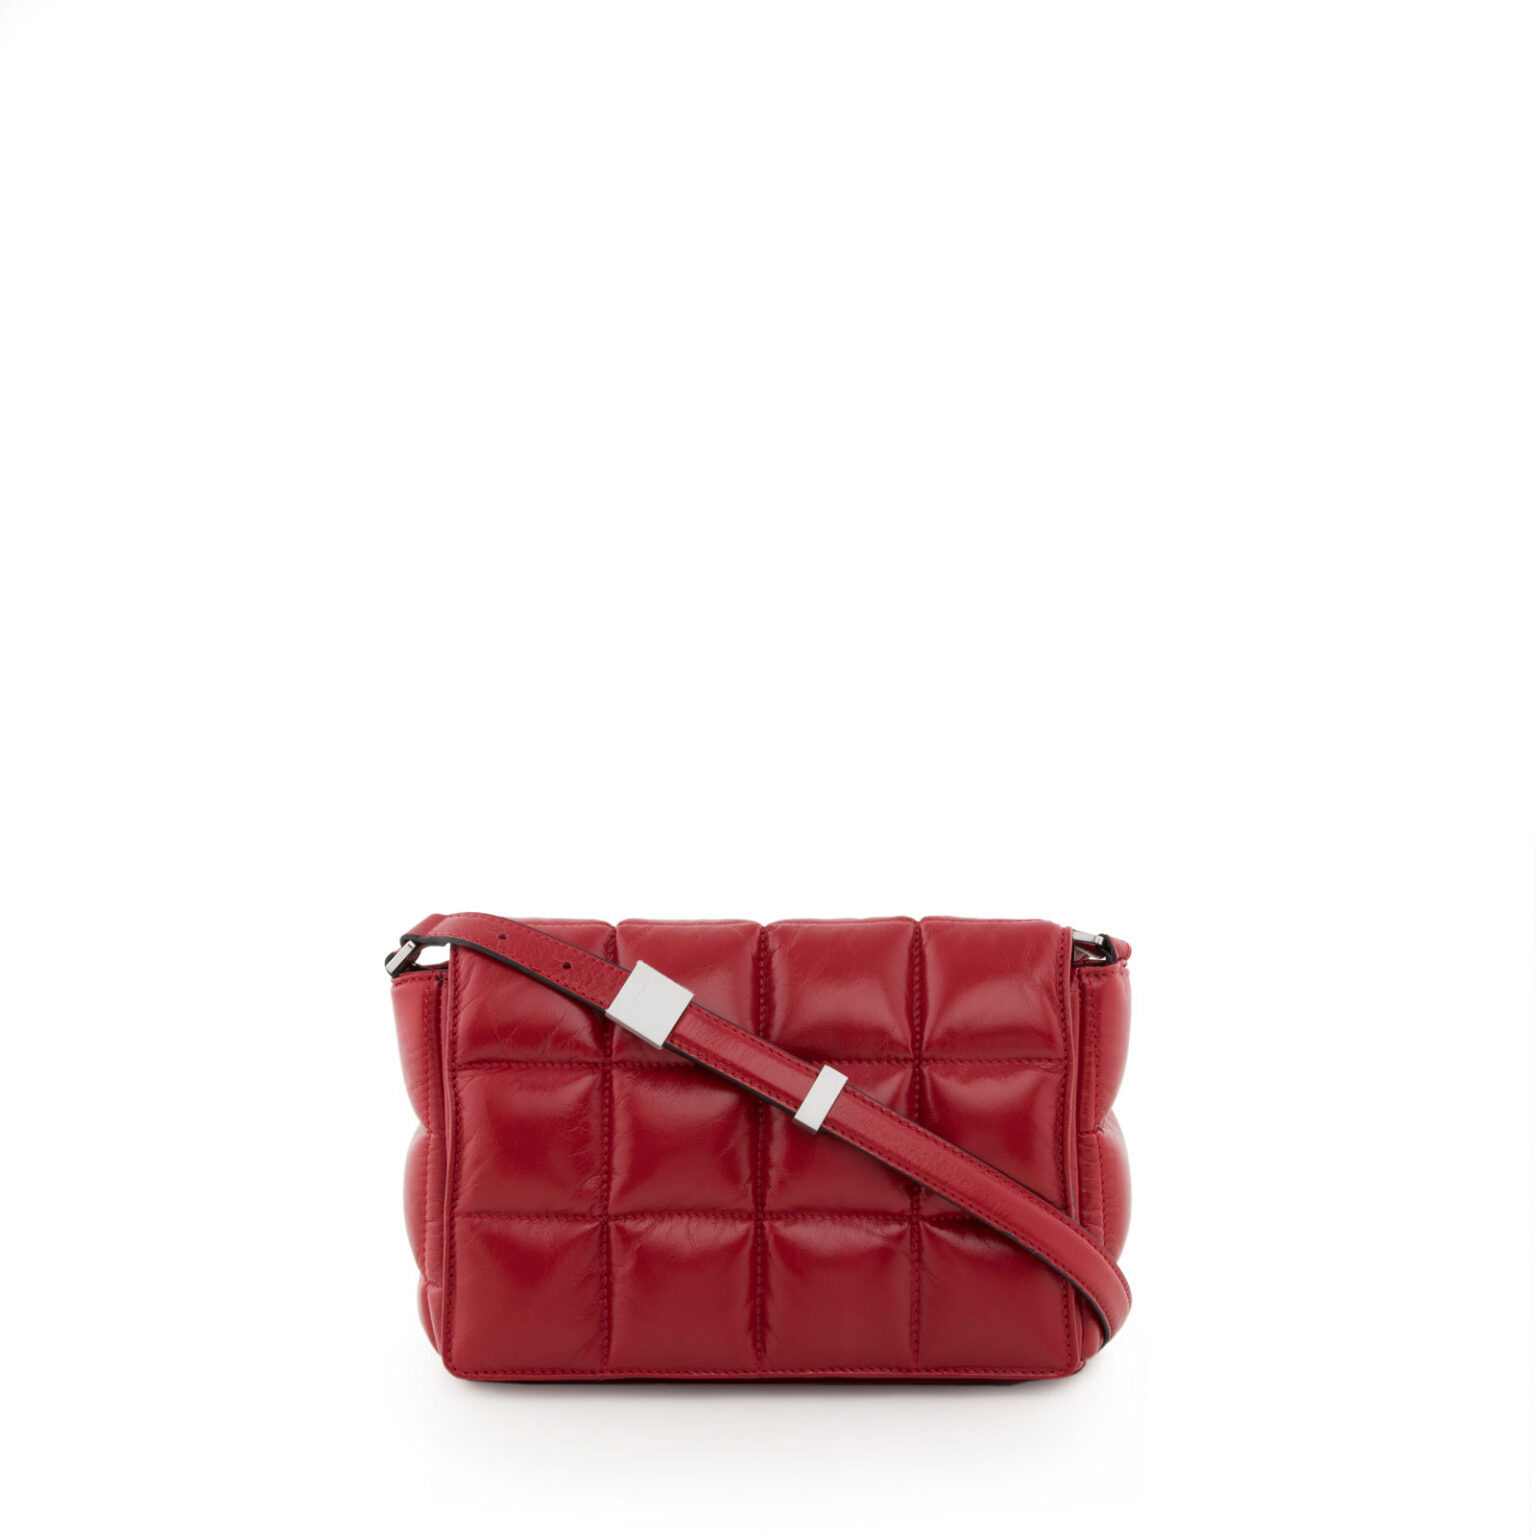 Teresa Large Top Handles | Arcadia Handbags